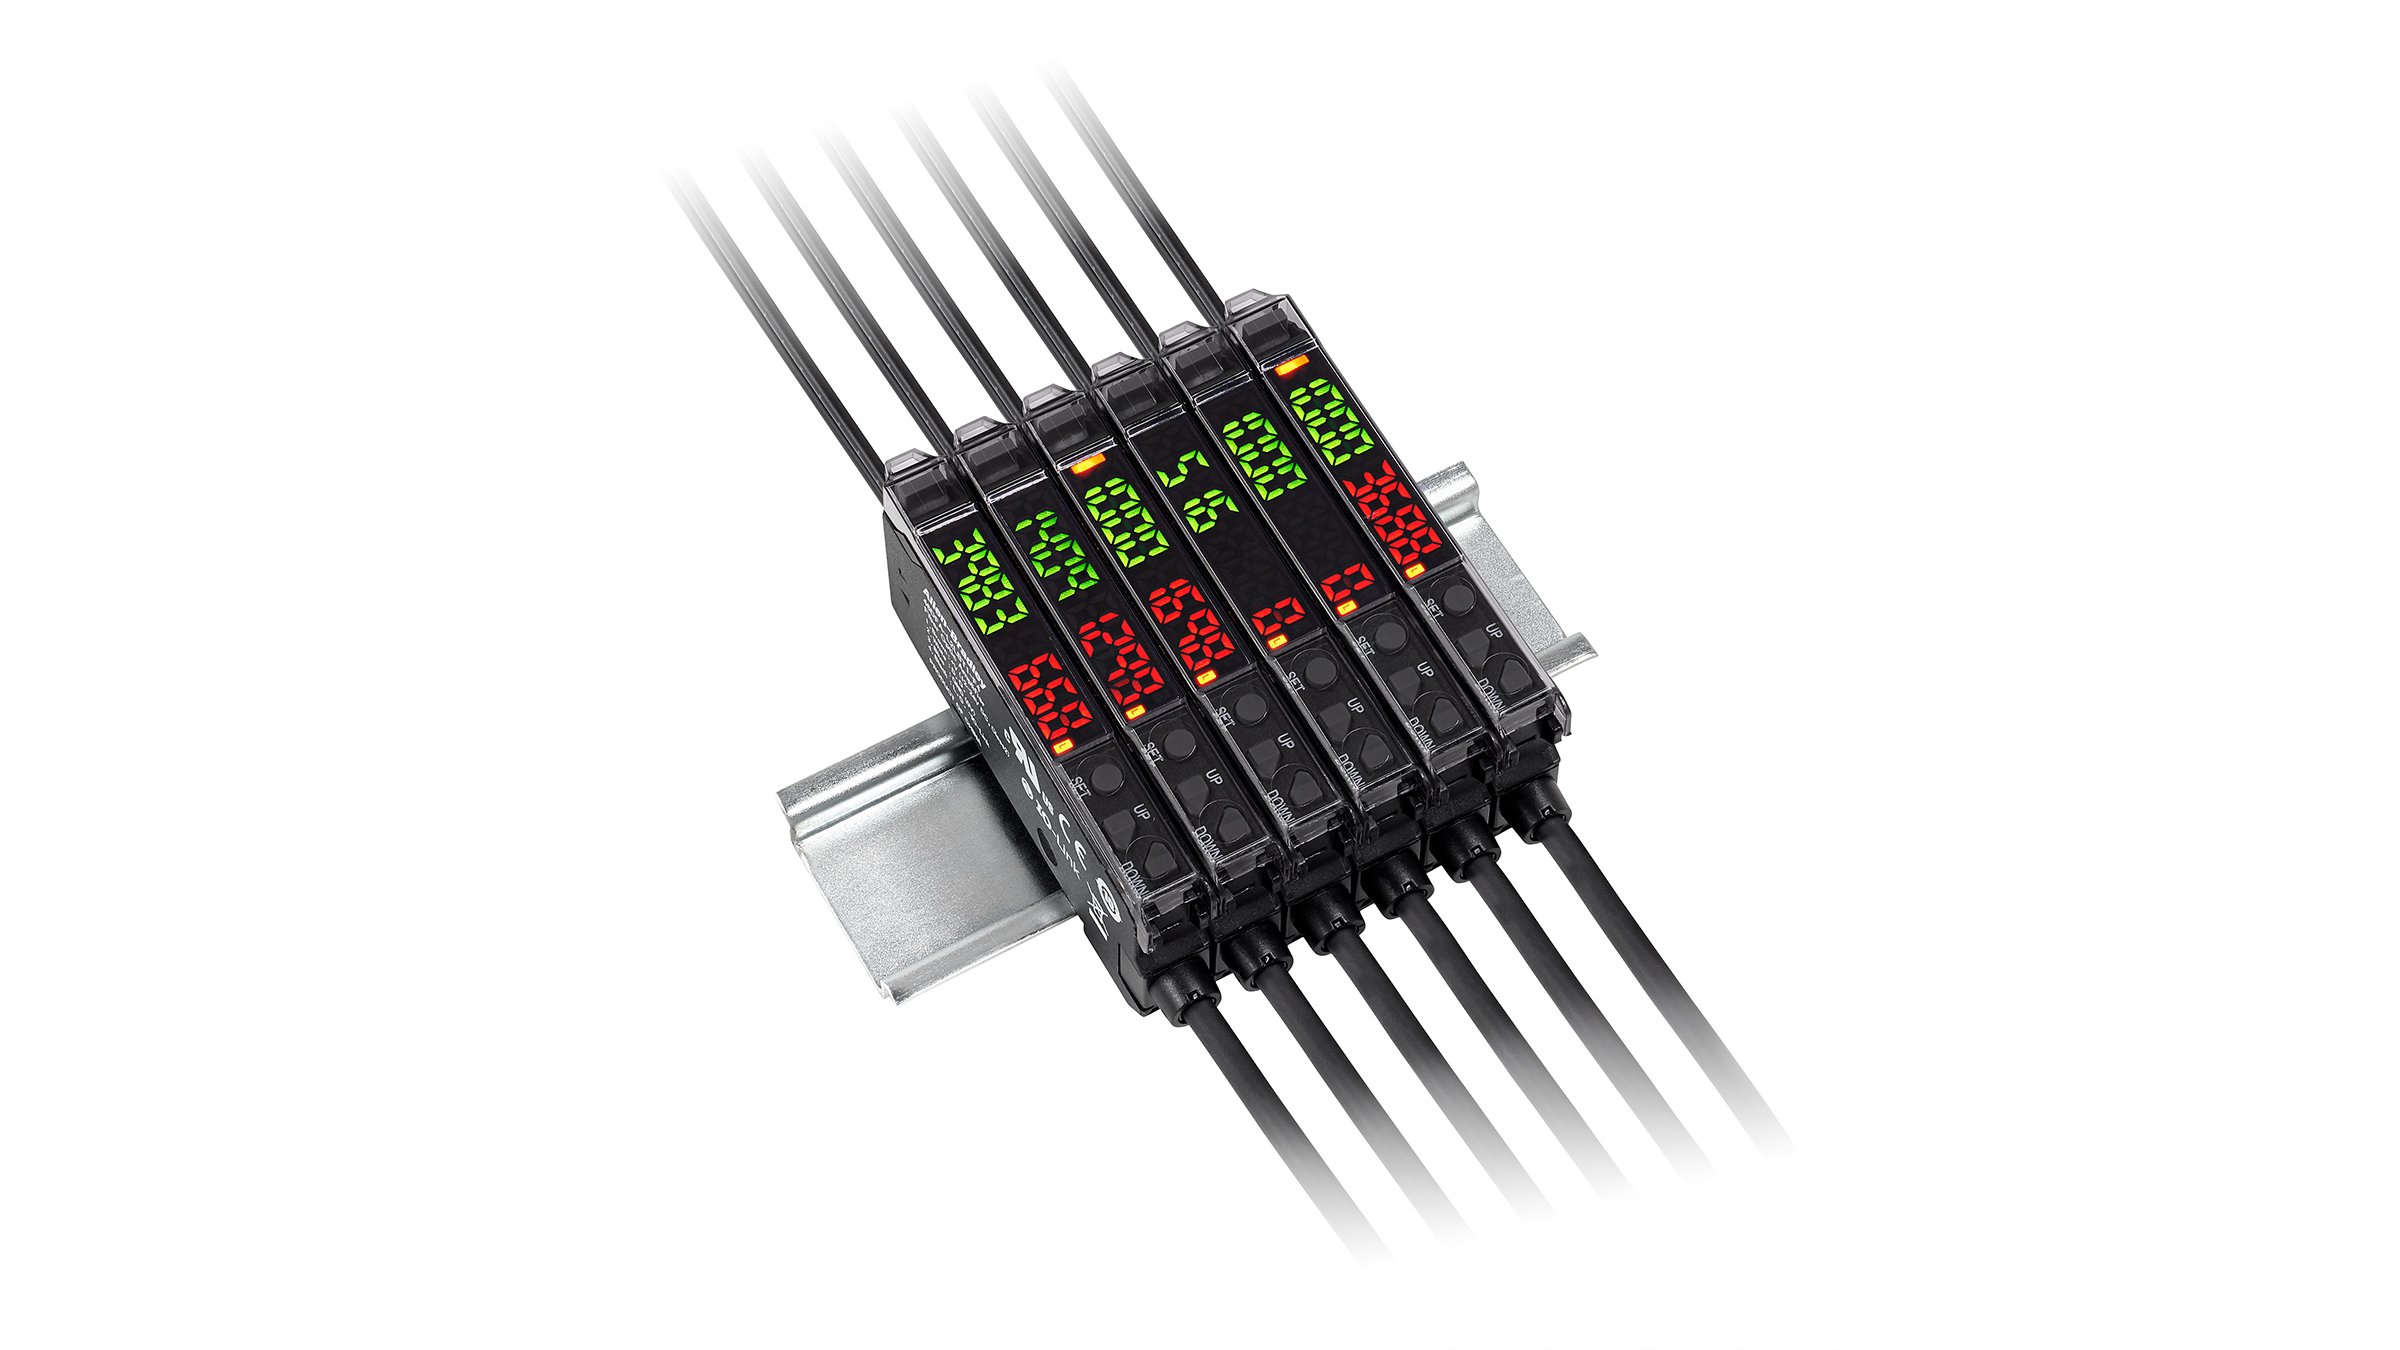 6 benachbarte dünne schwarze, rechteckige Sensoren mit bündigen grünen und roten Anzeigen, Kabel an jedem Ende, montiert auf einer DIN-Schiene